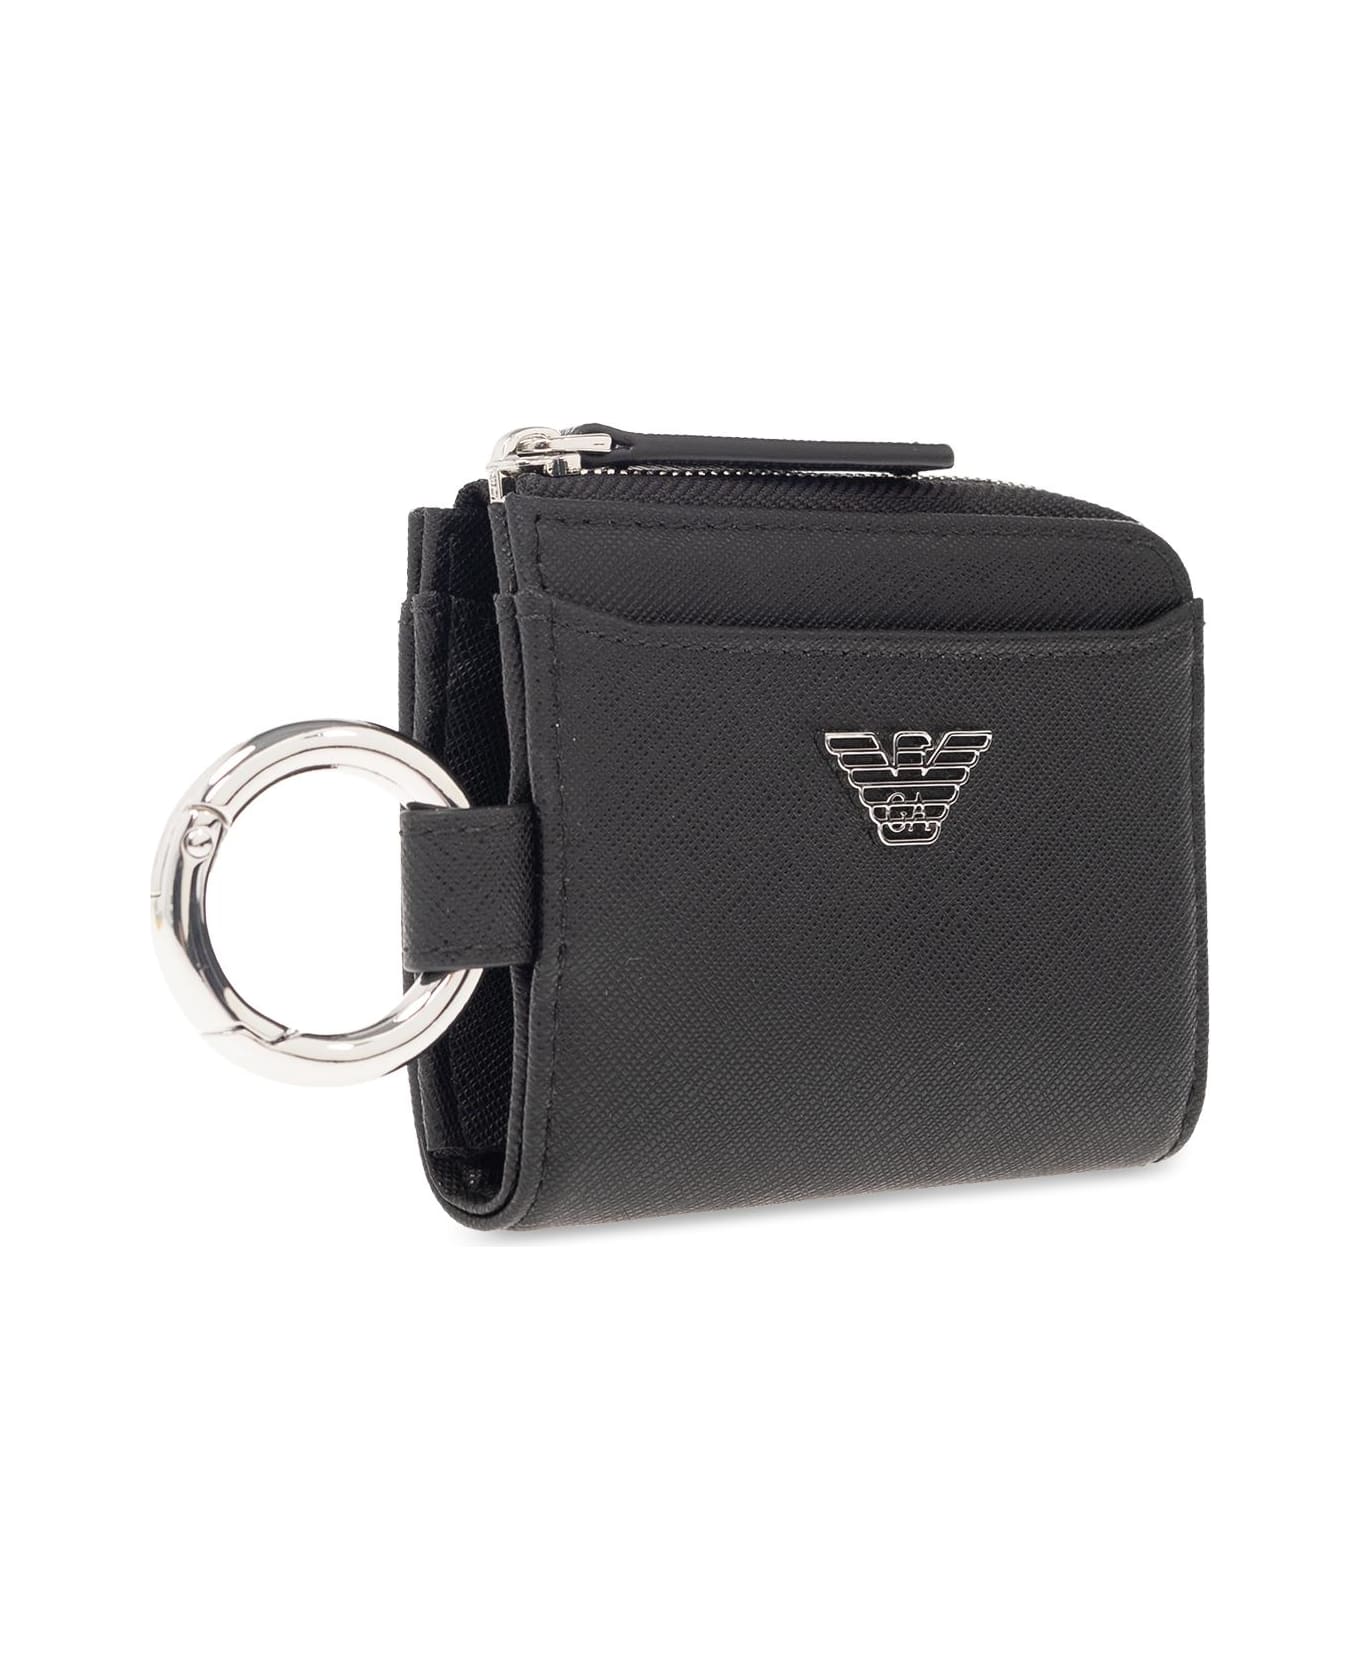 Emporio Armani Wallet With Keyring - Black